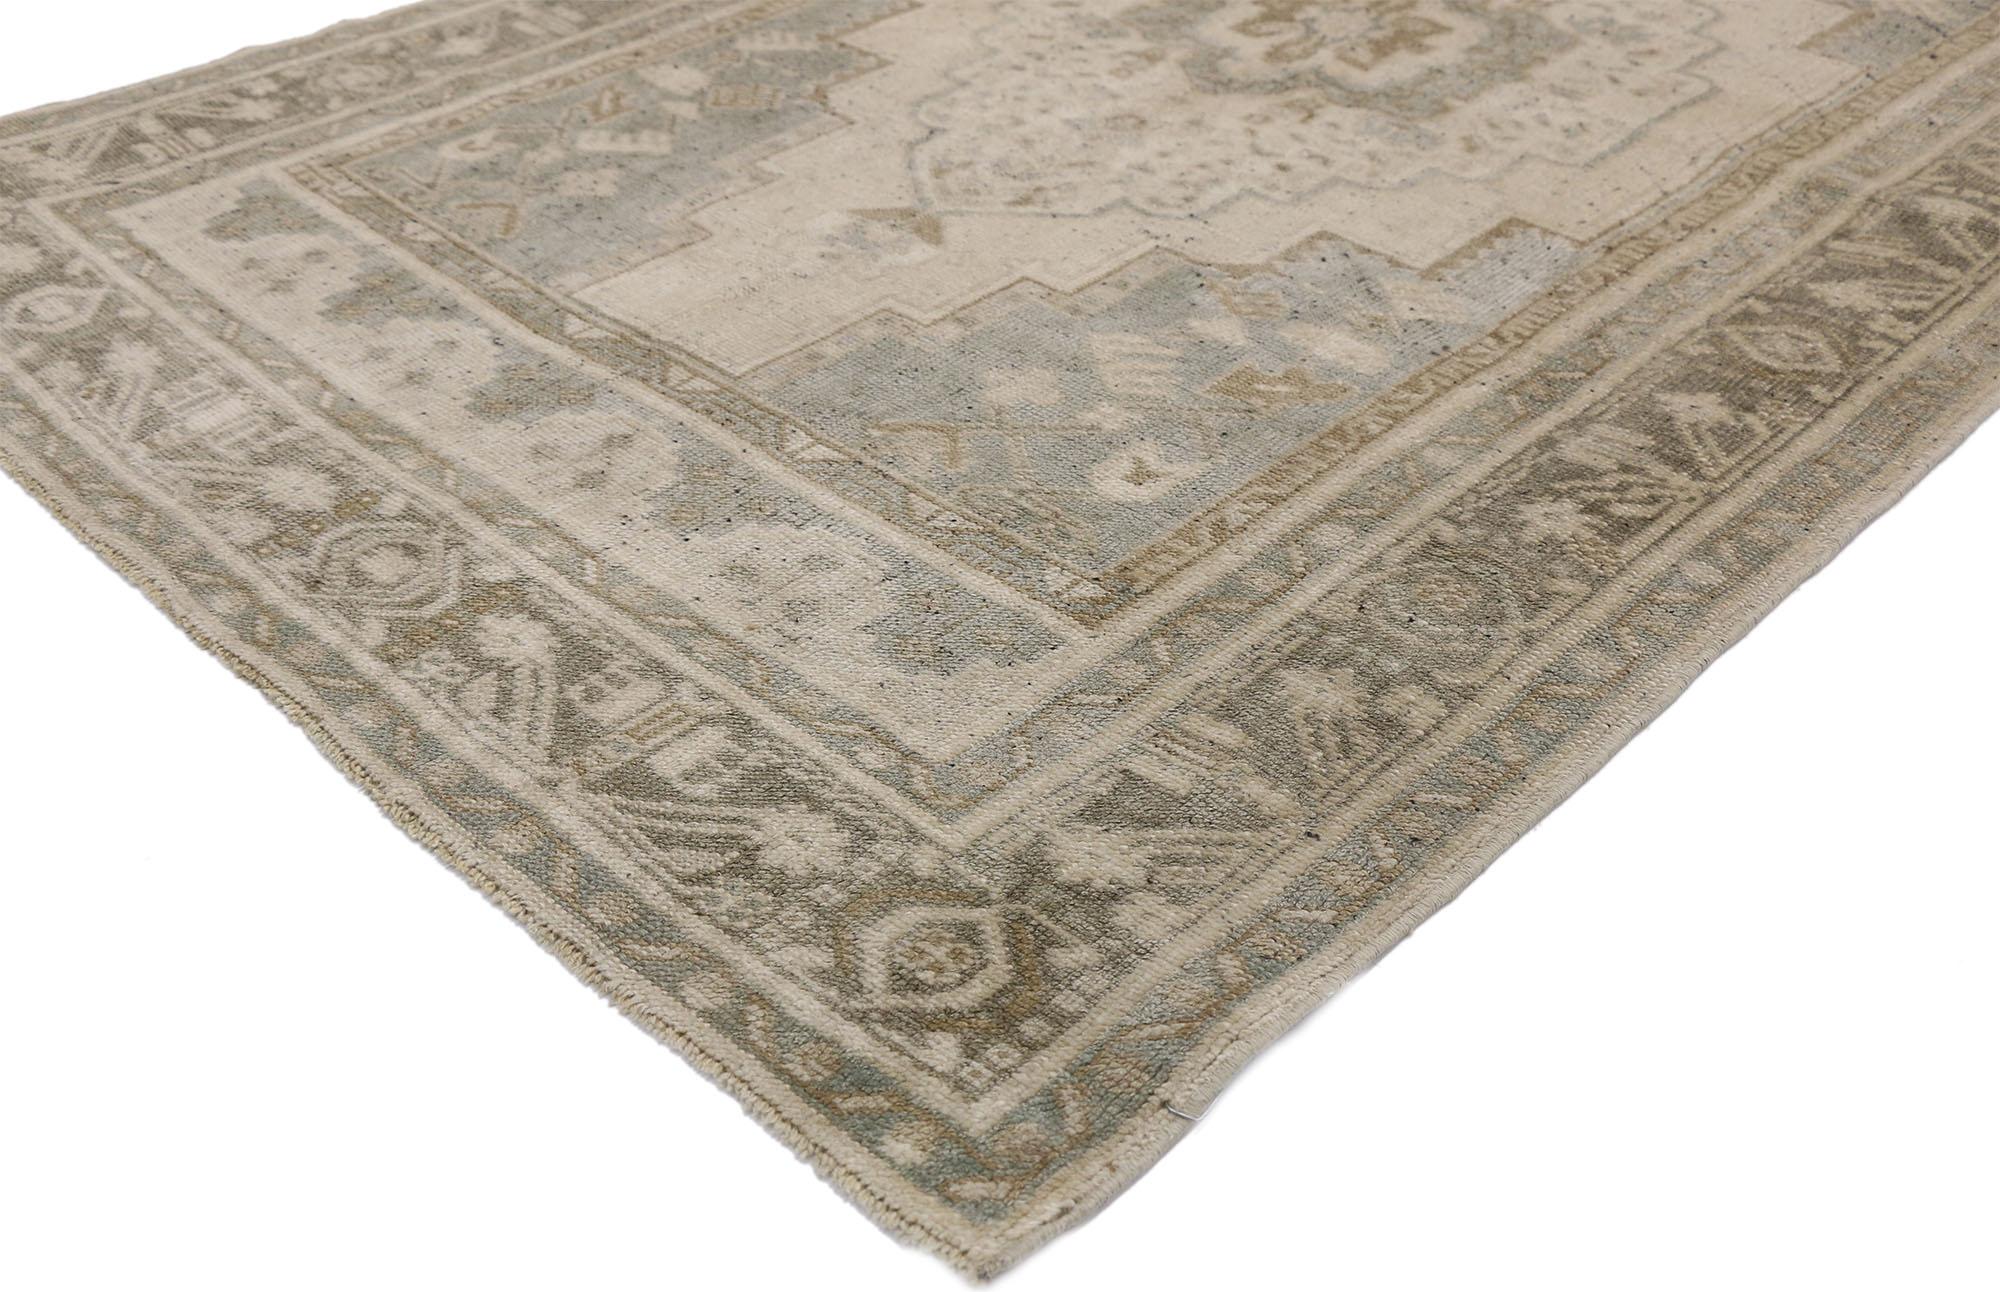 52440, alter türkischer Oushak-Teppich im modernistischen Chippendale-Stil. Dieser handgeknüpfte türkische Oushak-Teppich aus Wolle zeichnet sich durch ein Medaillon in der Mitte aus, das auf einem abgewaschenen, hafermehlfarbenen Hintergrund